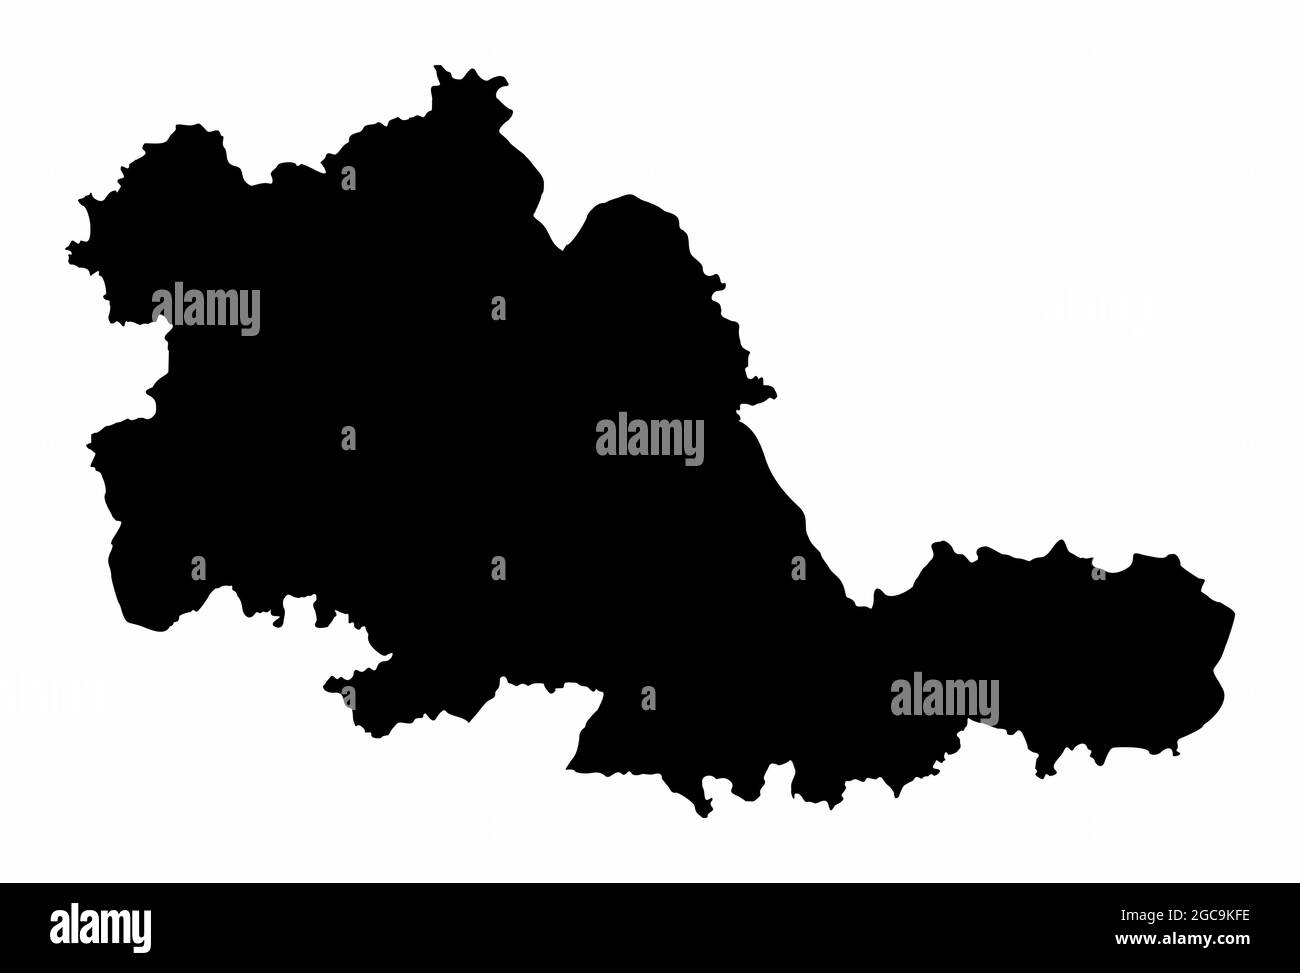 West Midlands County mappa silhouette scura isolata su sfondo bianco, Inghilterra Illustrazione Vettoriale